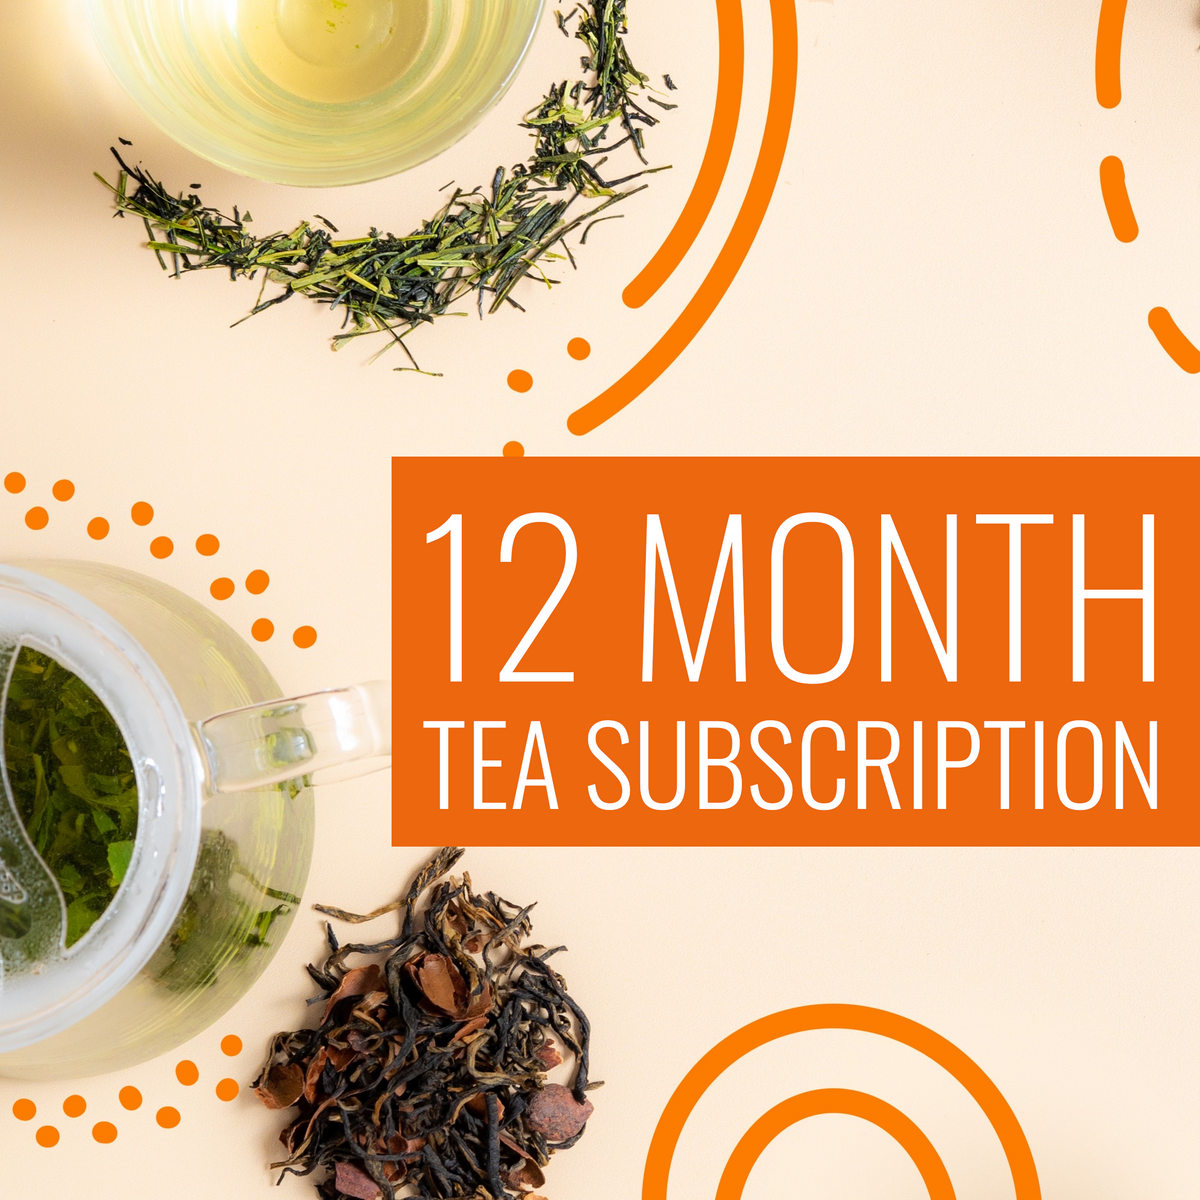 12 month tea subscription